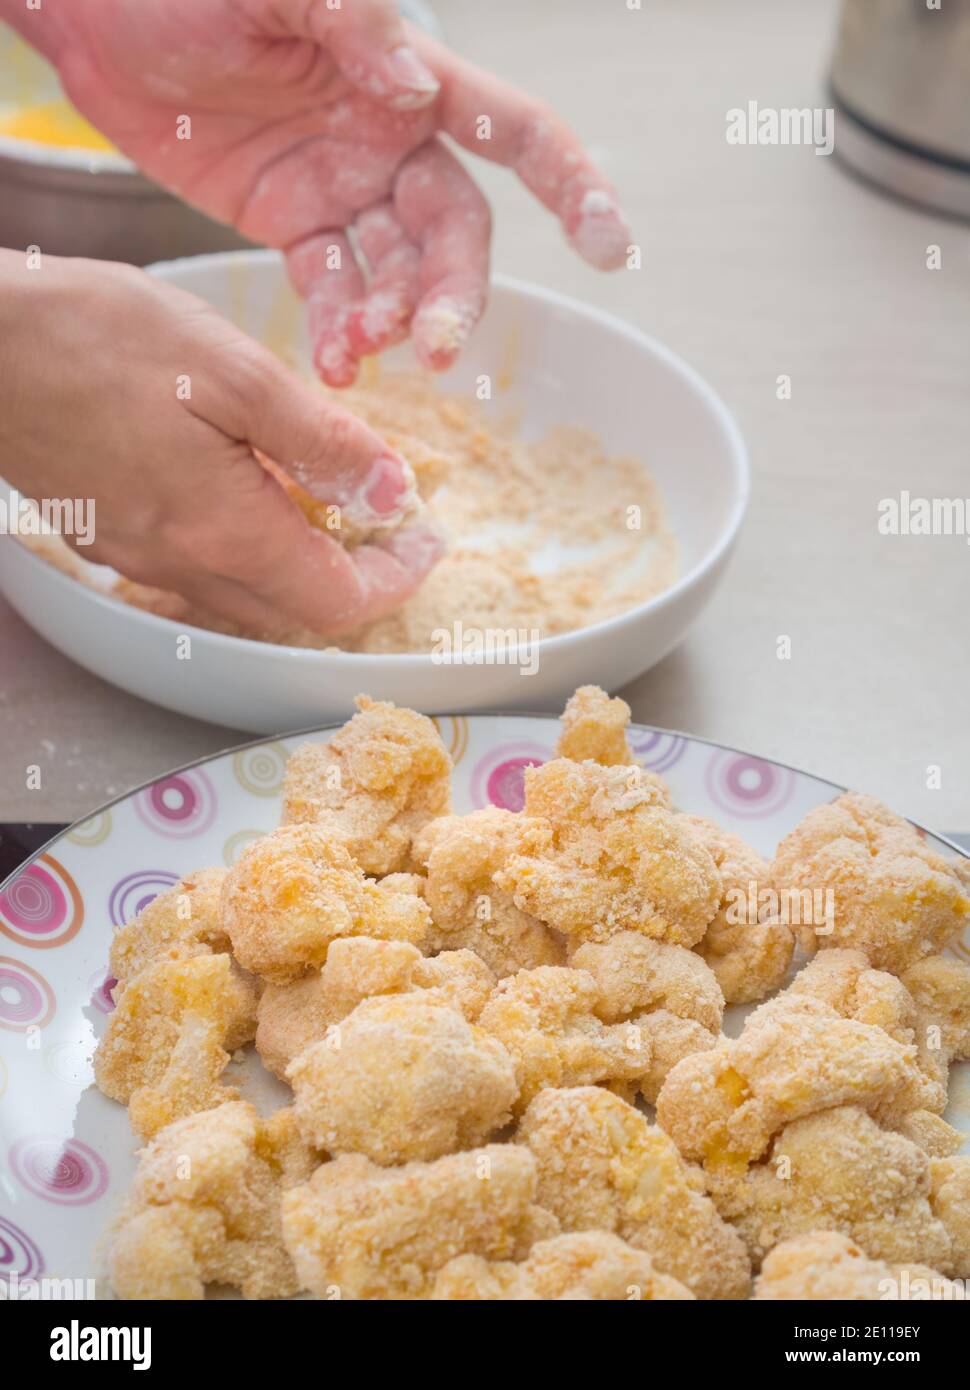 Mani che ricopra il cavolfiore in Breadcrumbs in cucina Foto Stock